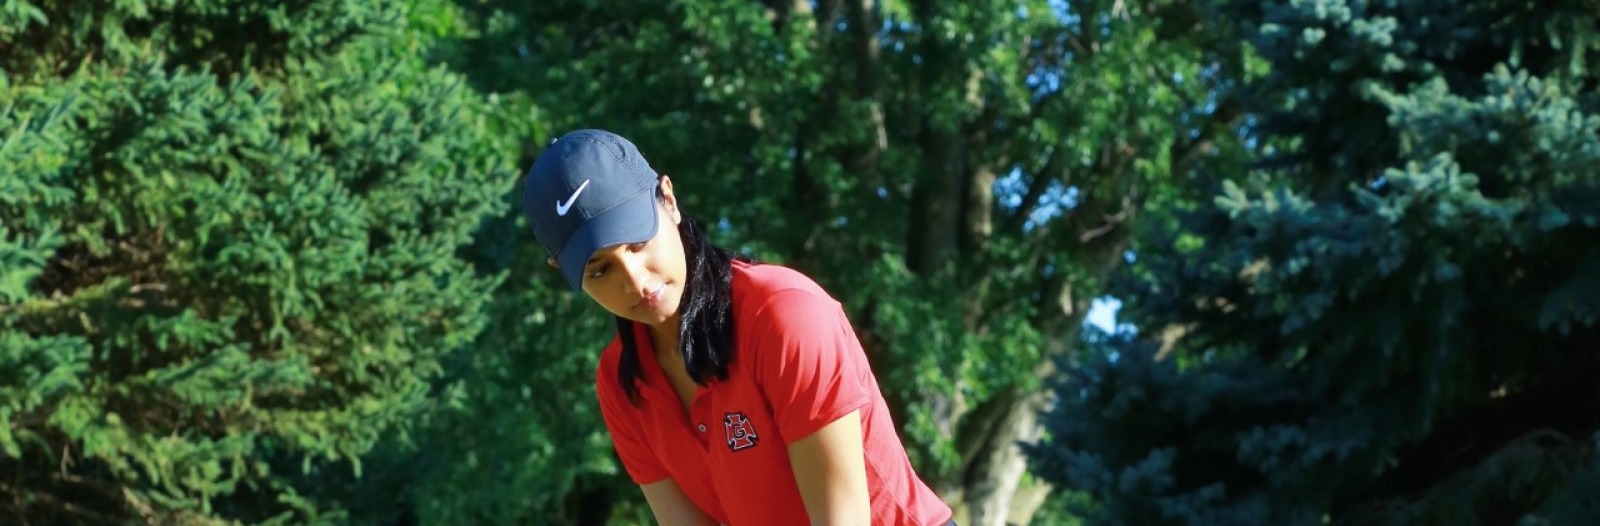 Vrishali Sinha playing golf